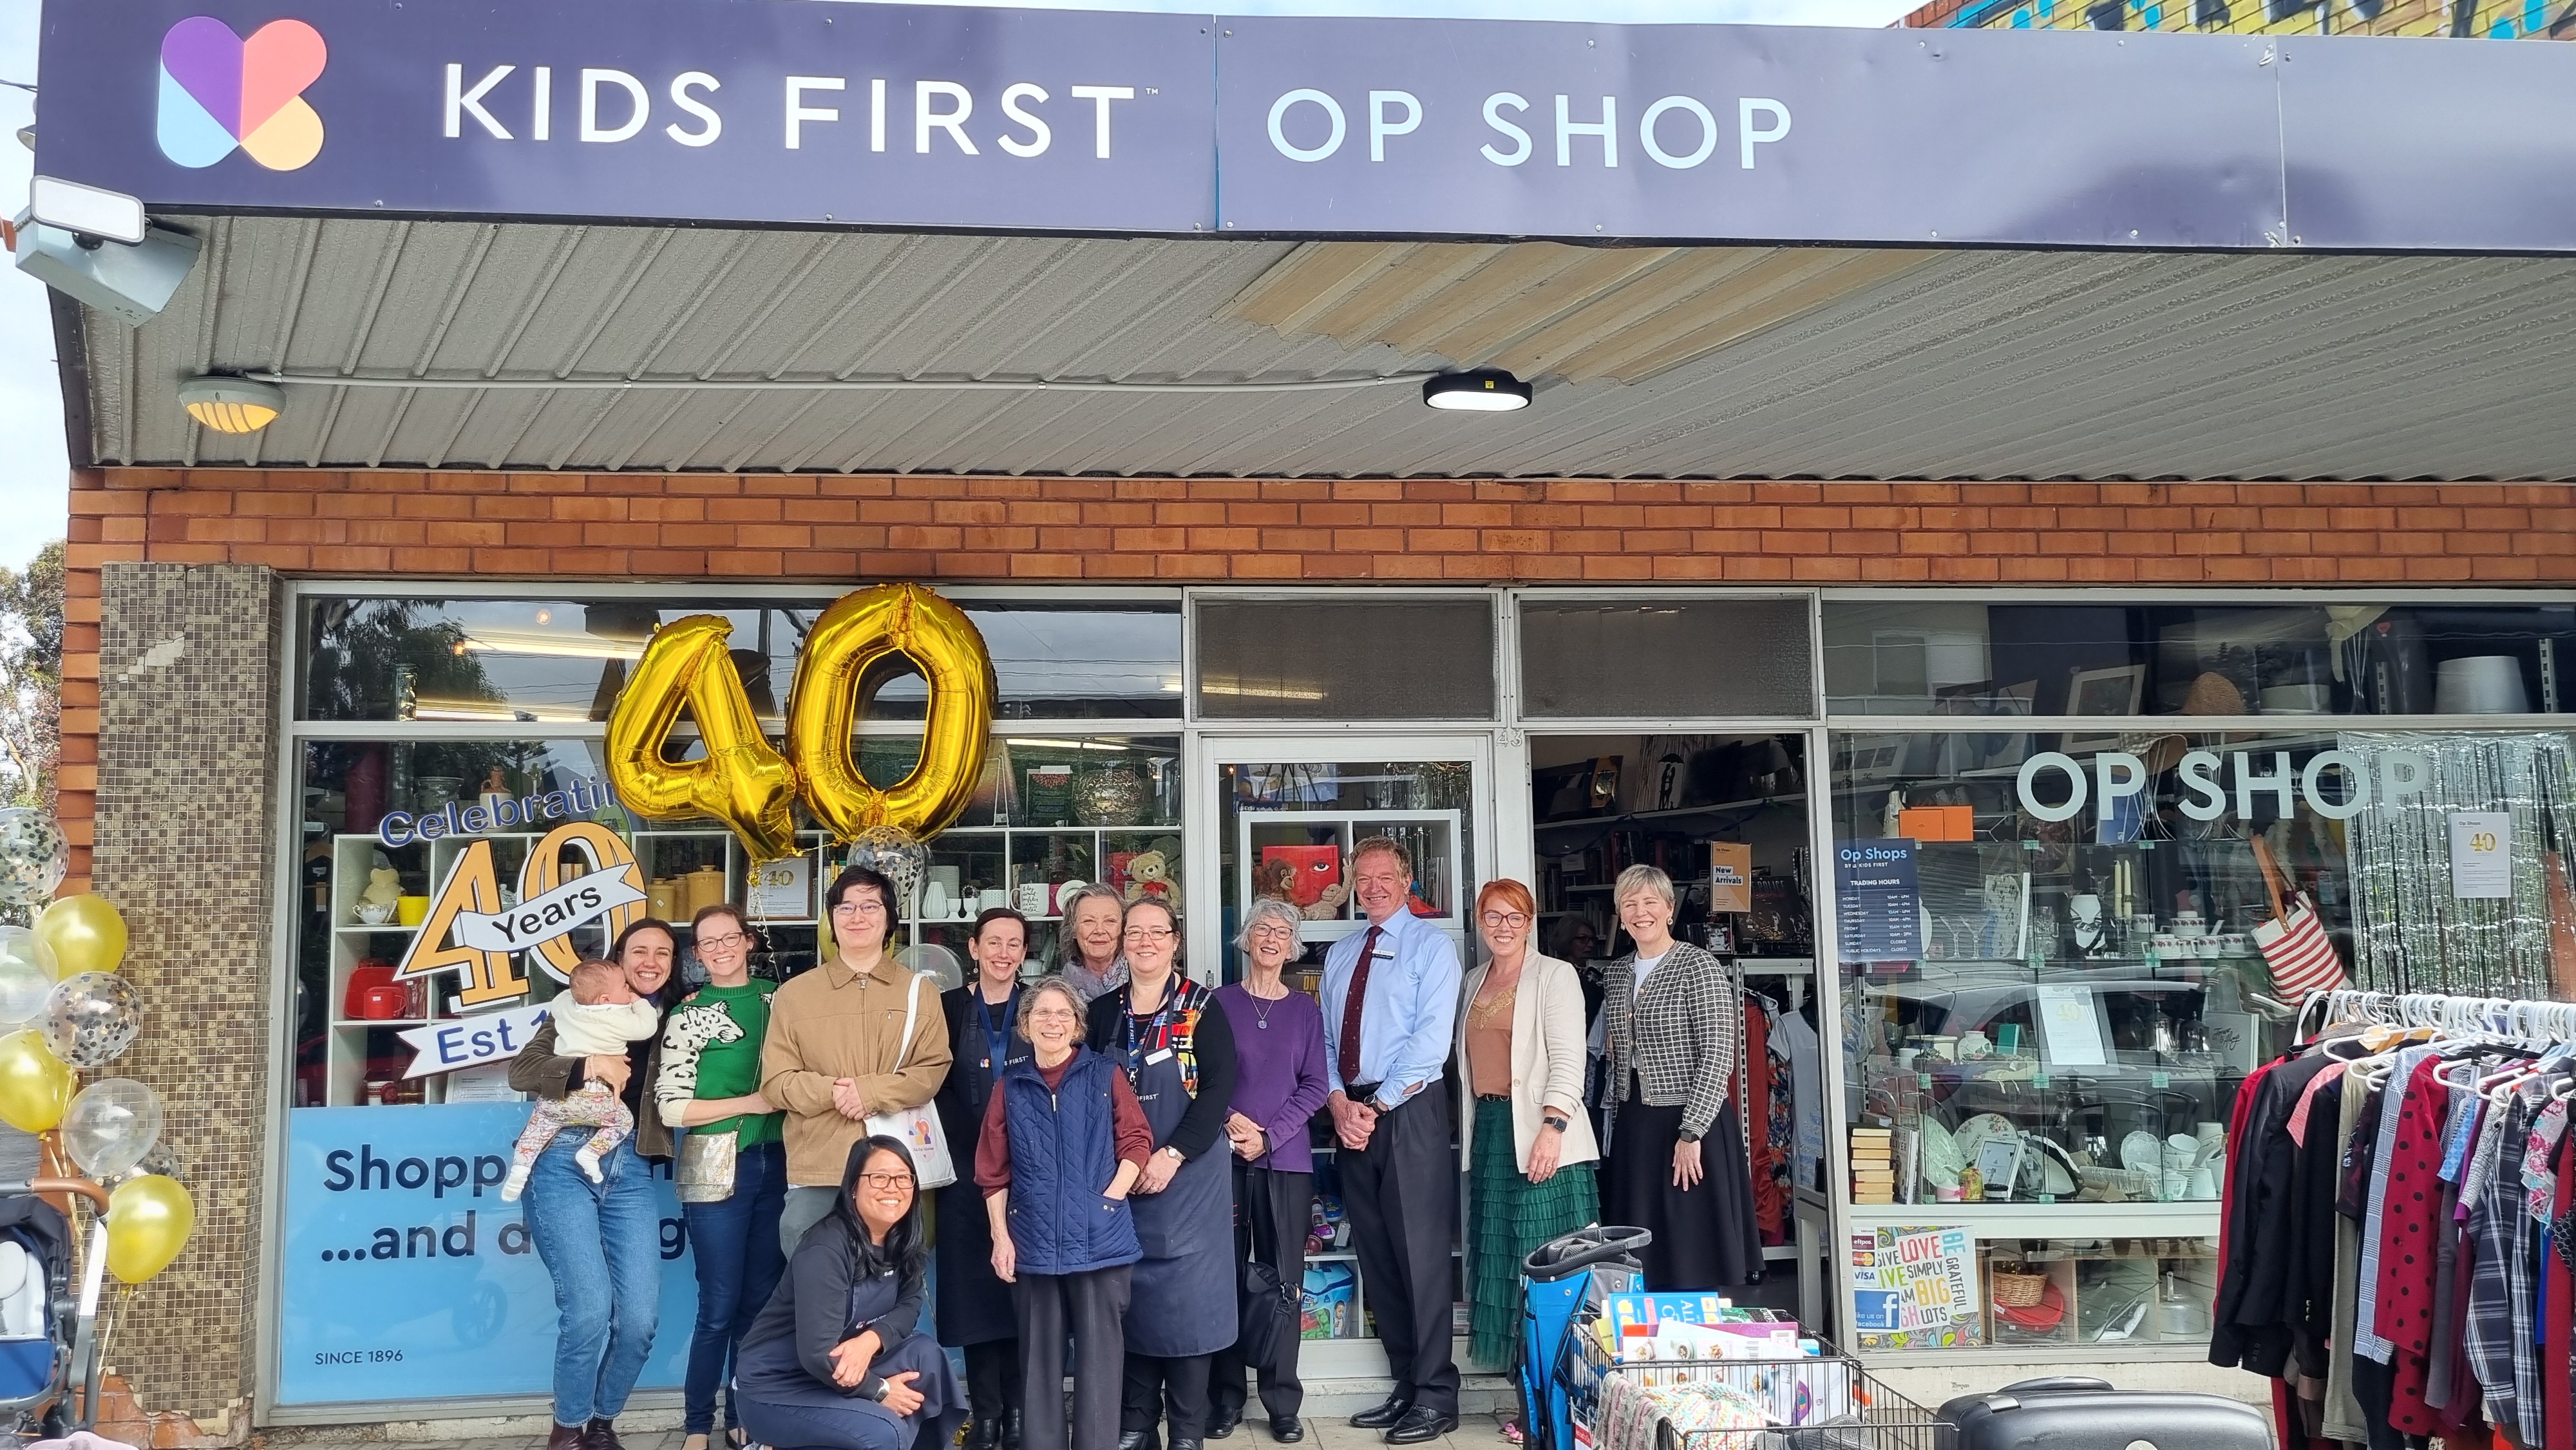 Op Shop turns 40!